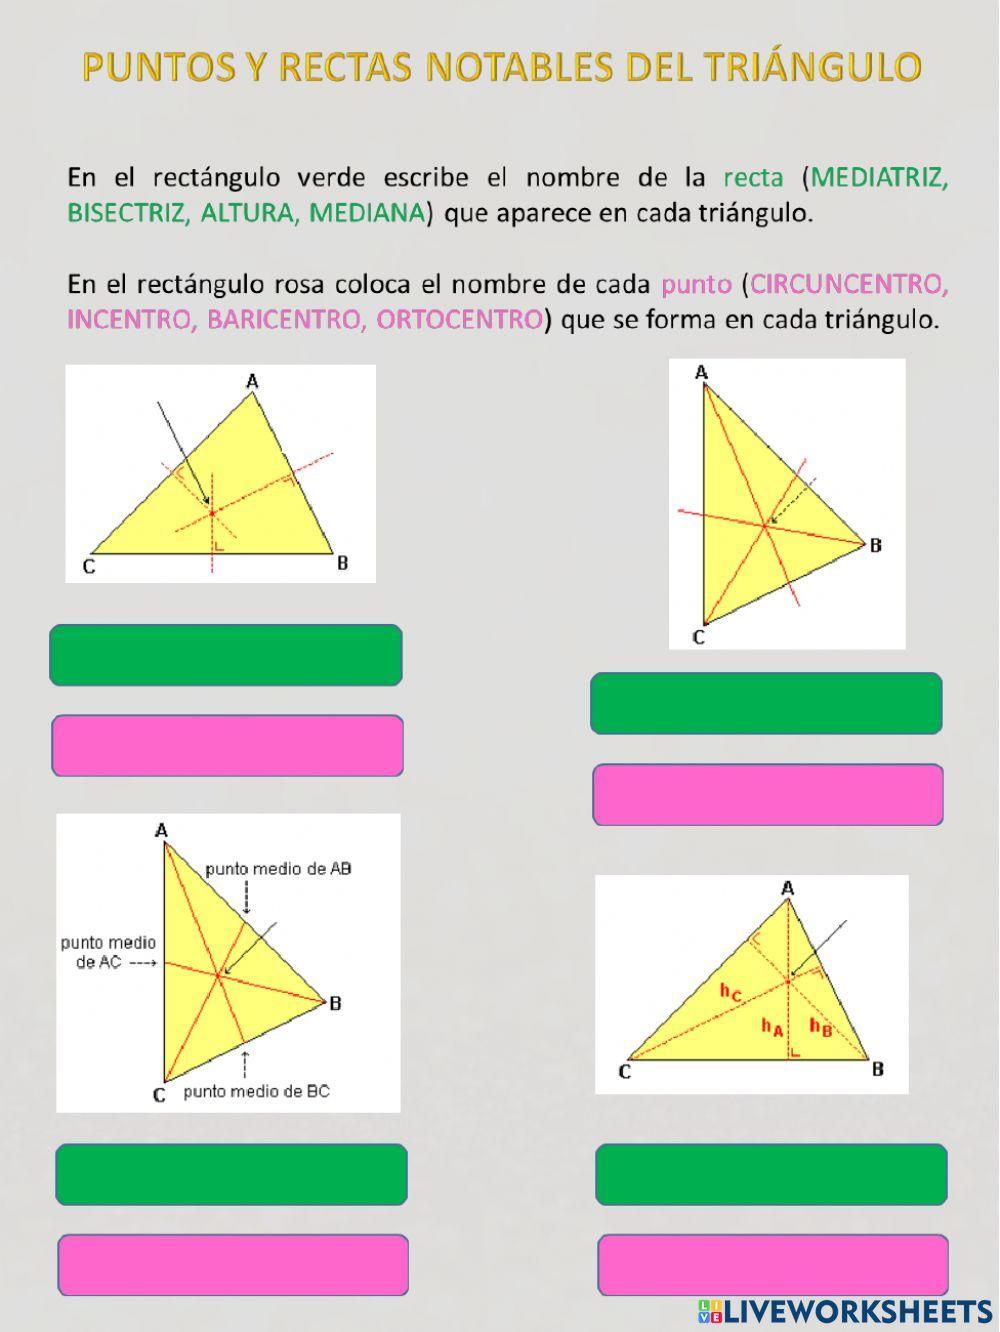 Puntos y rectas NOTABLES en el triángulo